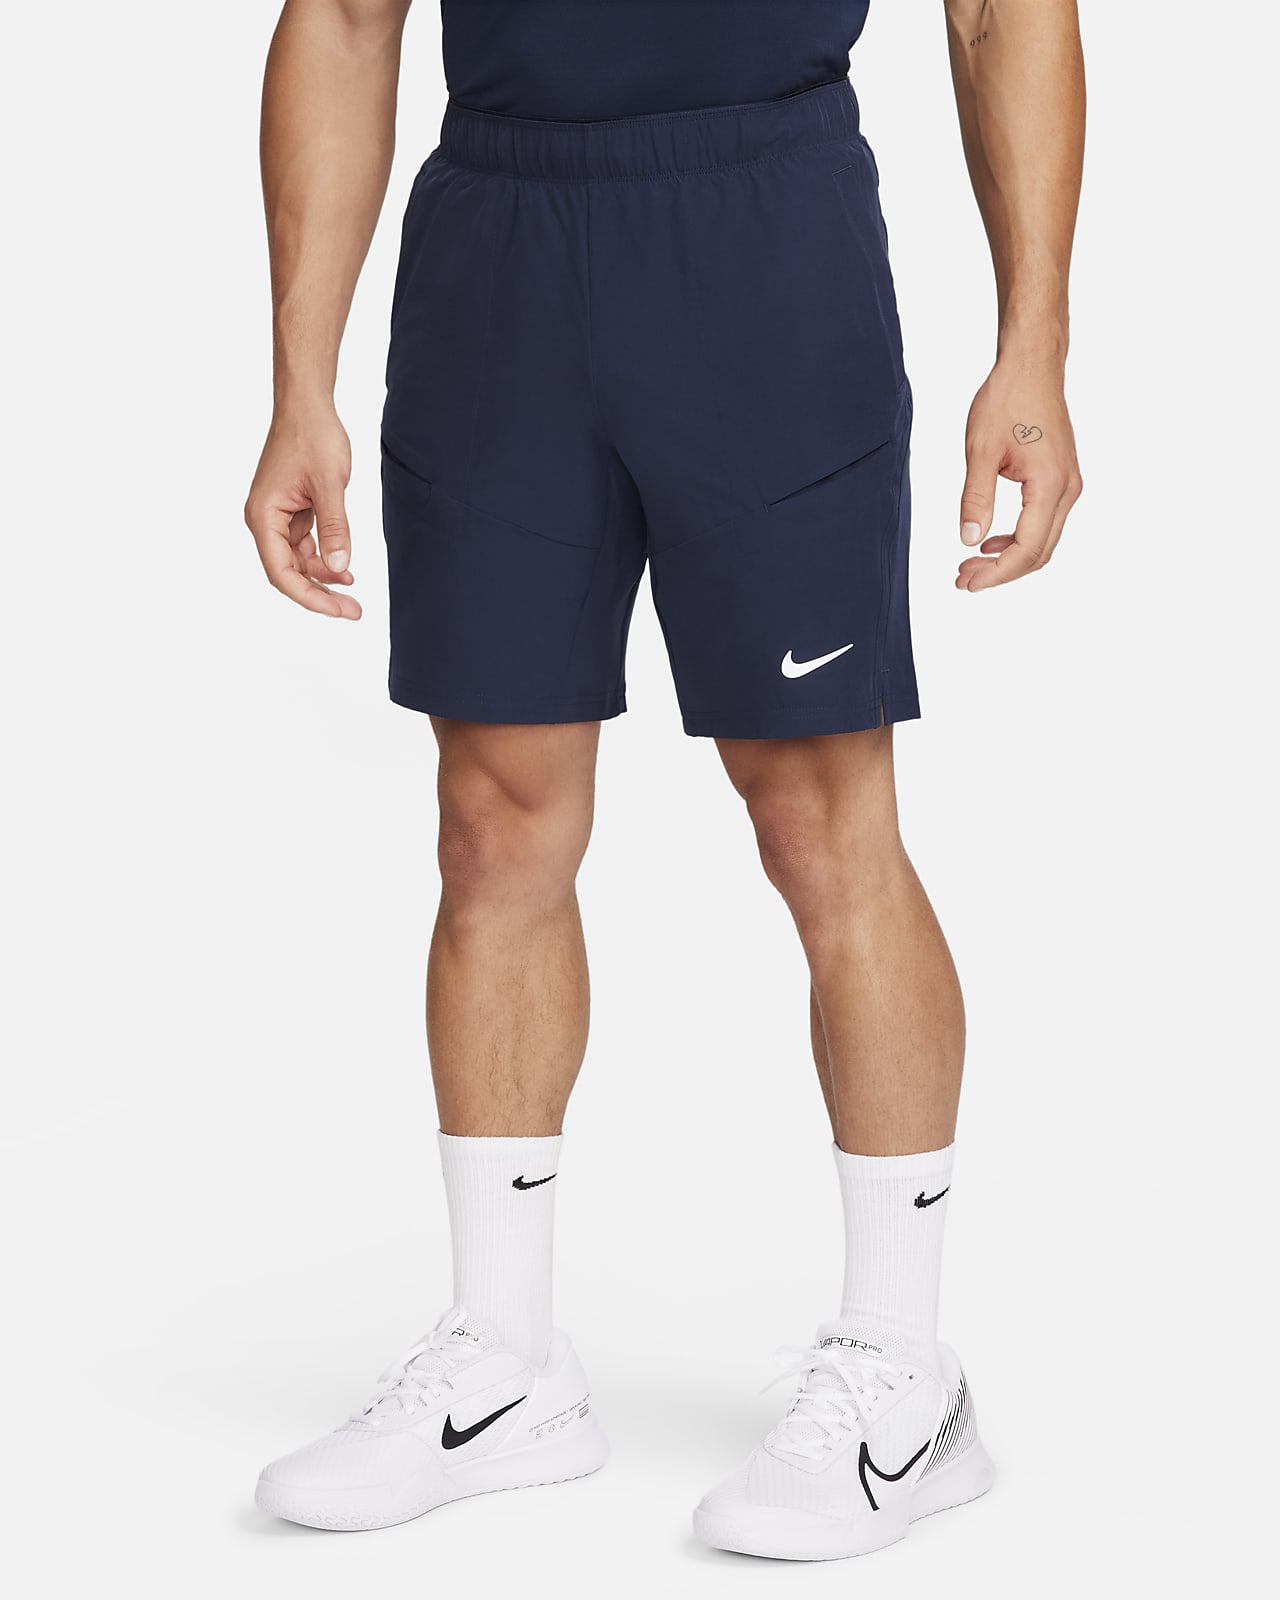 NikeCourt Advantage 23 cm Erkek Tenis Şortu